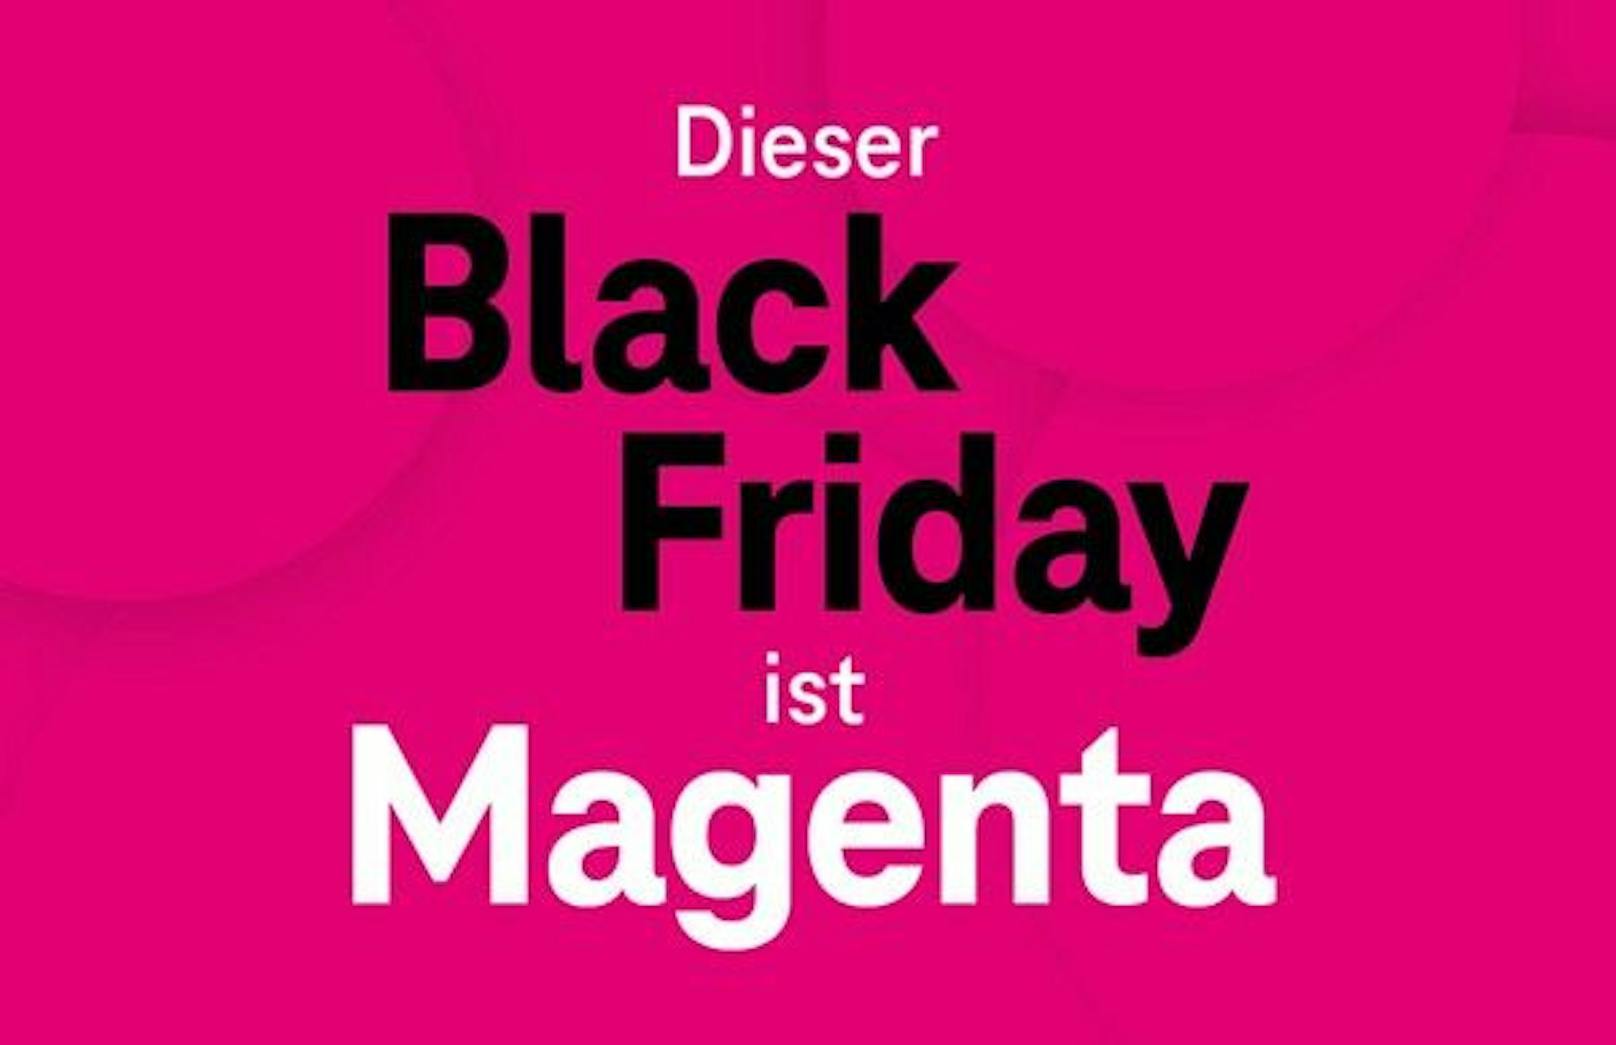 Dieser Black Friday ist Magenta: Einmalige Rabatt-Chance für Schnäppchenjäger.